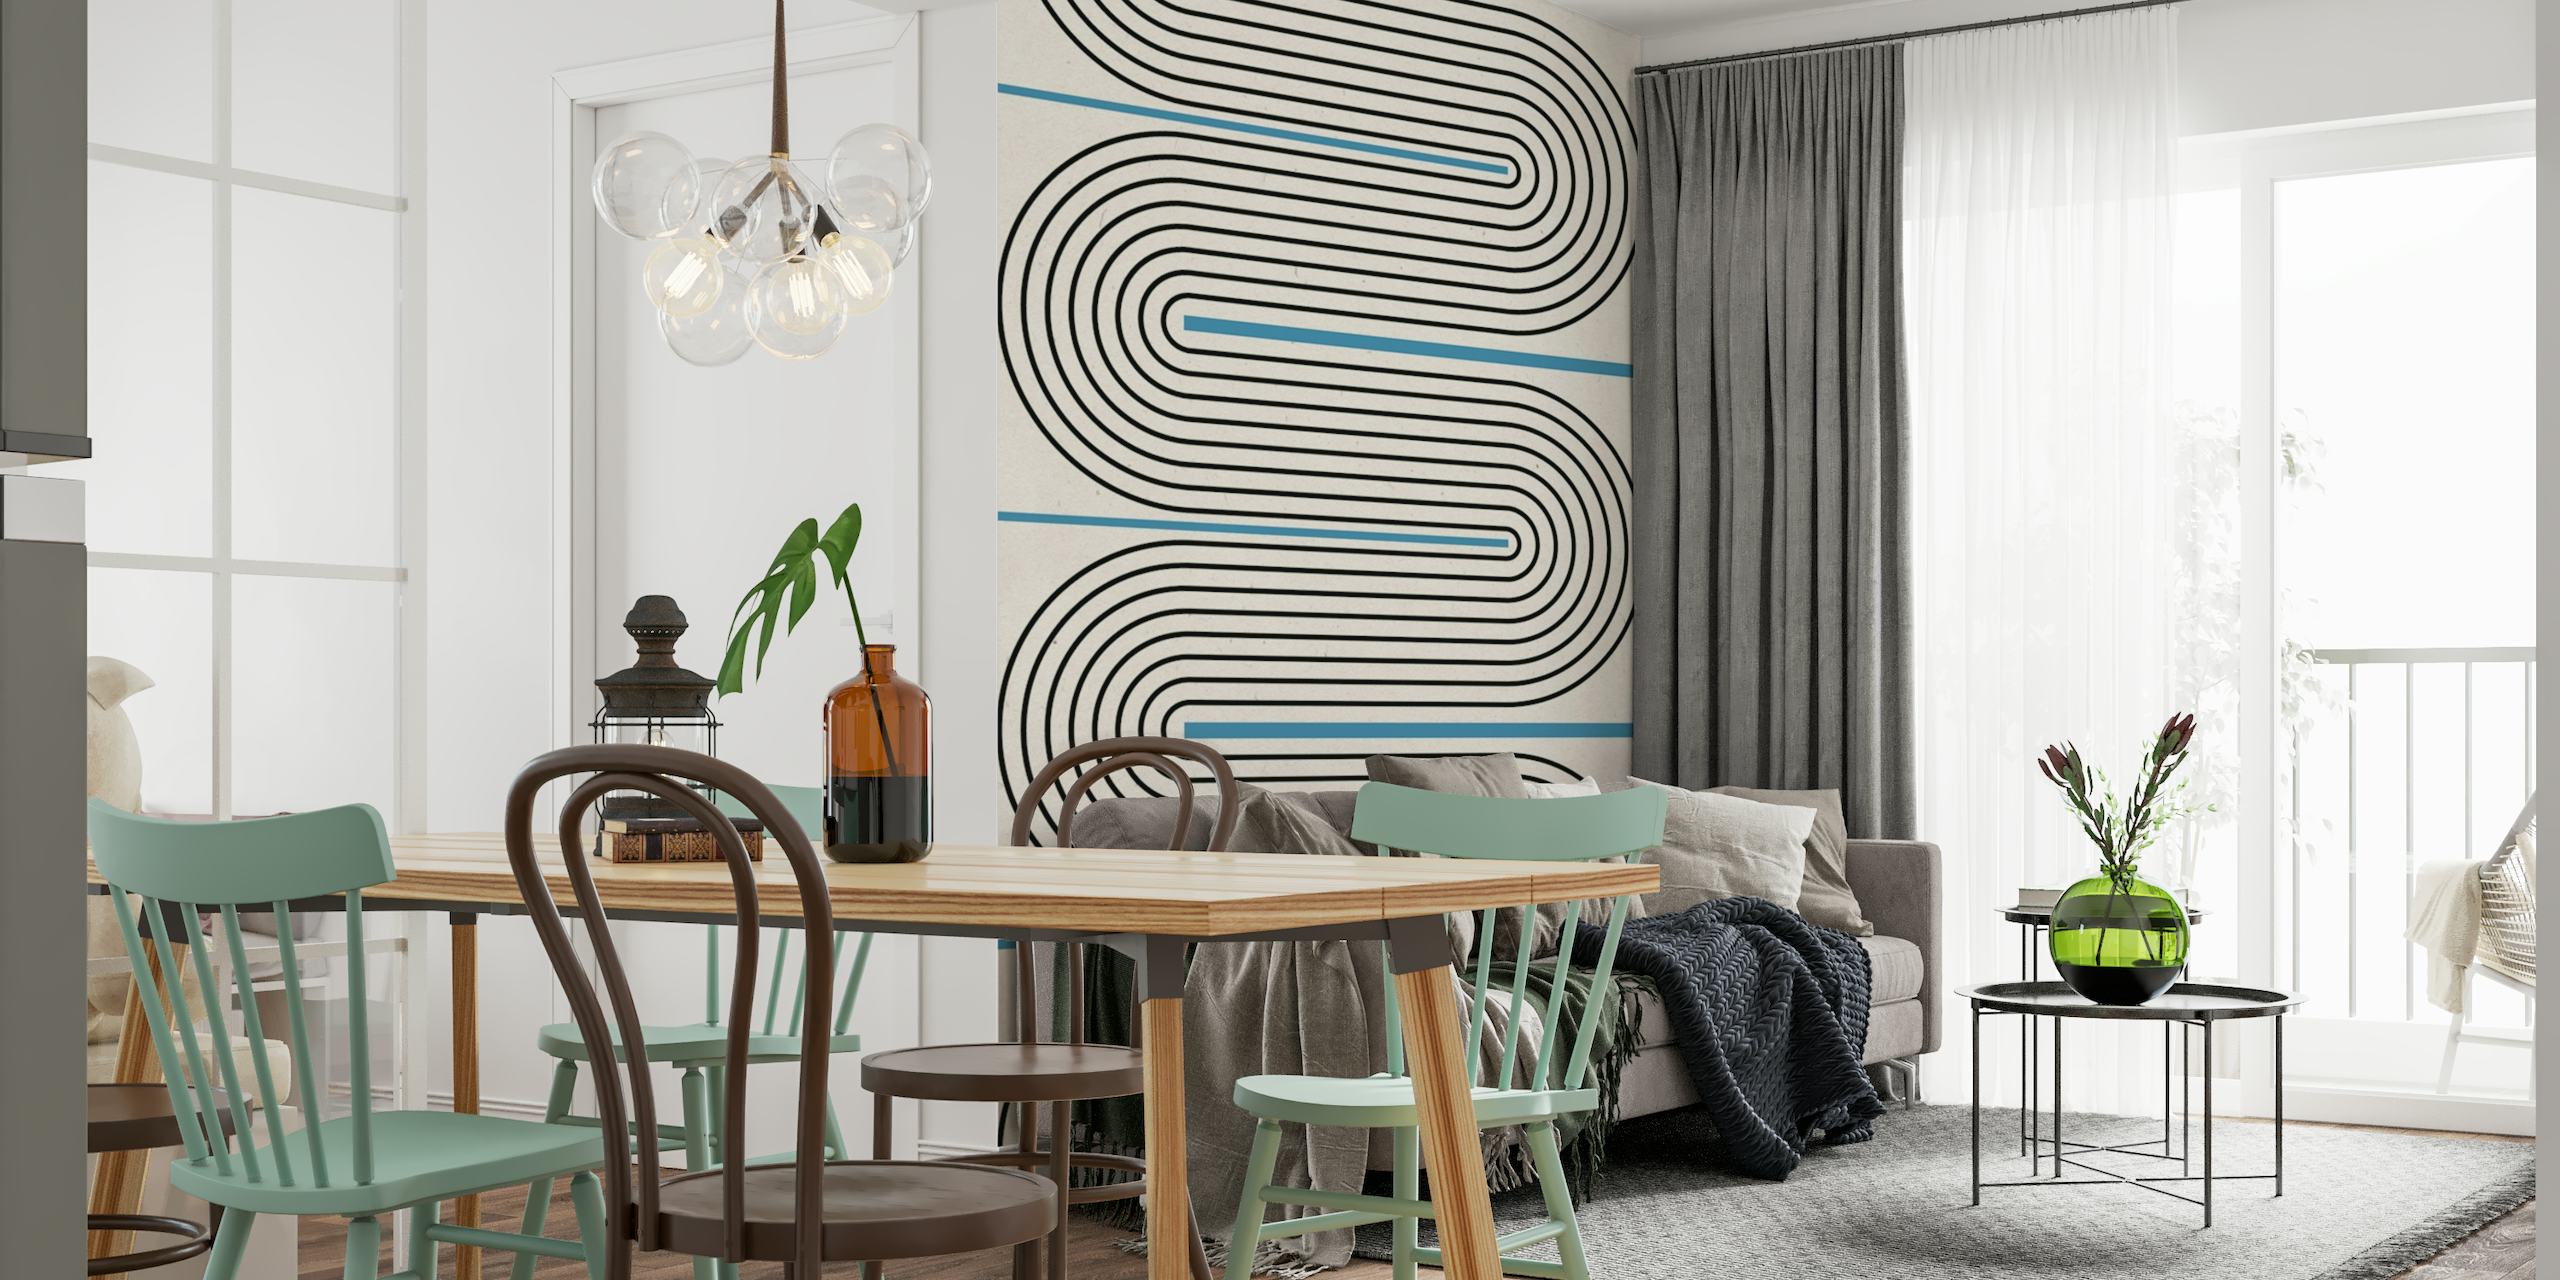 Linee astratte blu e nere che creano un design equilibrato e armonioso su un murale con sfondo neutro